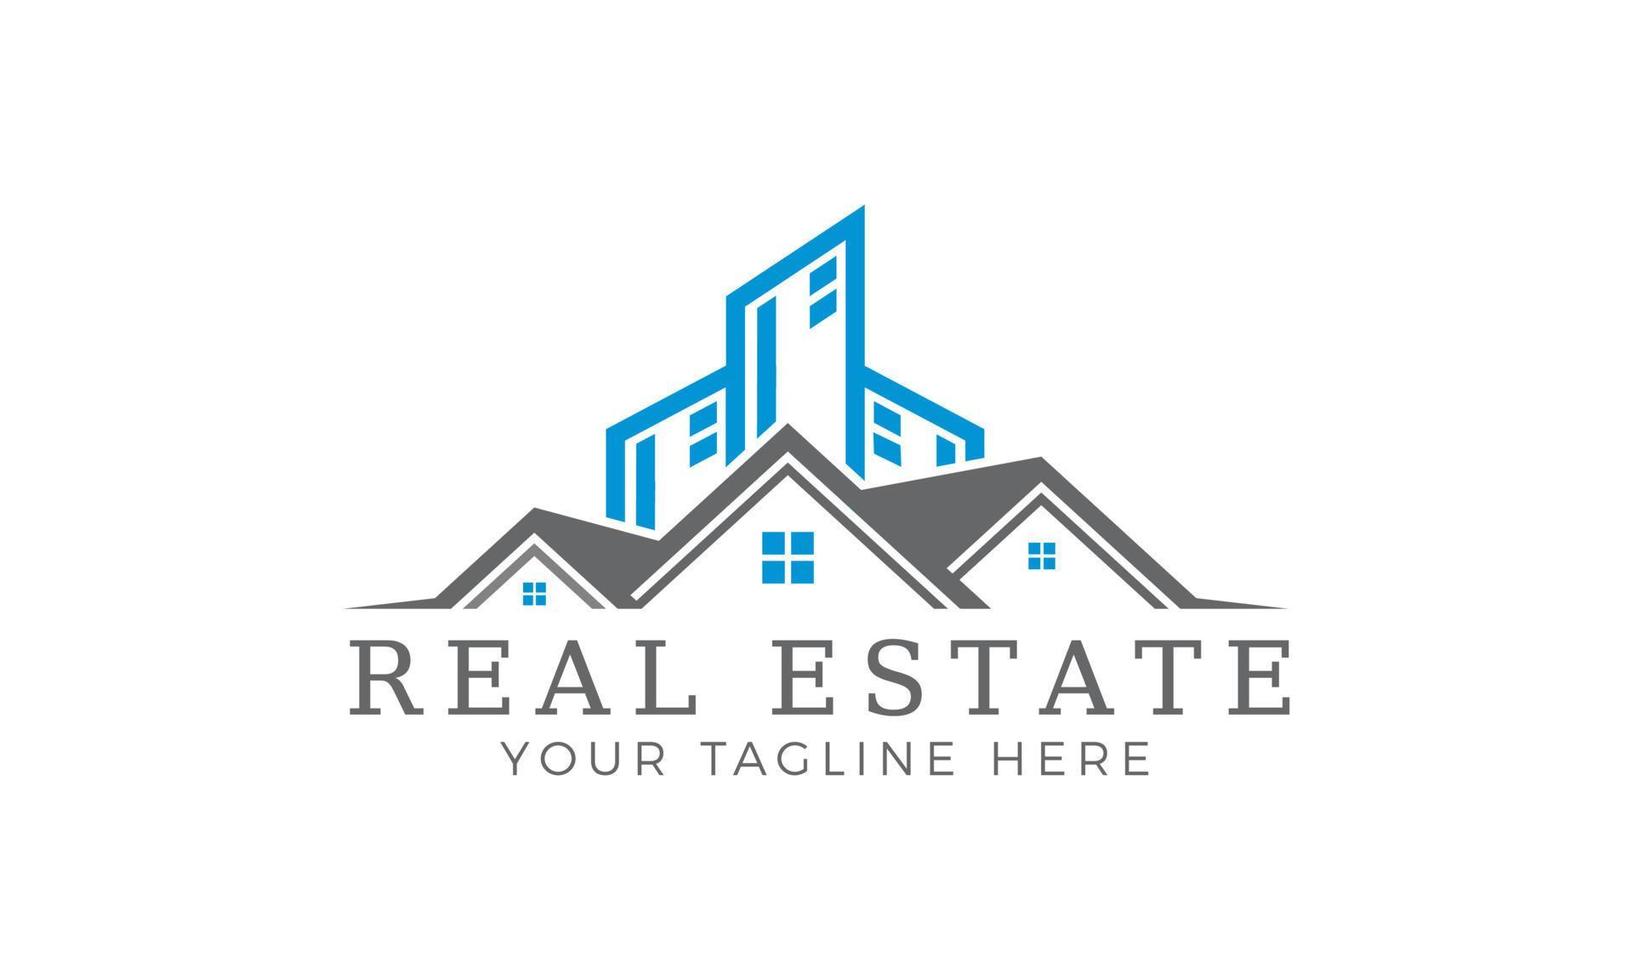 Real estate company logo, Modern home vector logo art, Construction logo design template